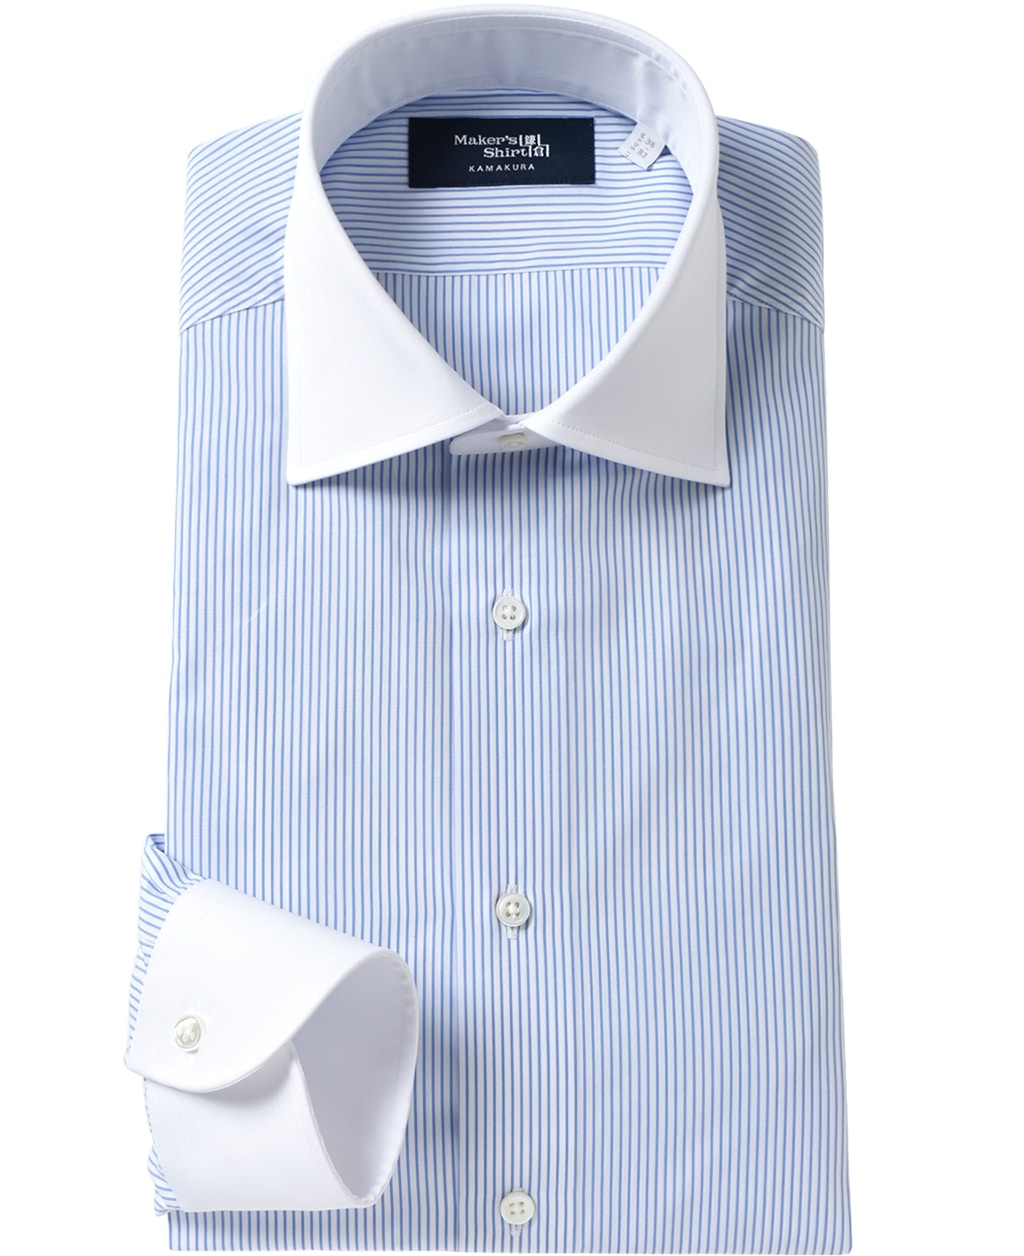 クレリックシャツと言えば「白い襟」と「青ストライプ」の組み合わせが基本……というか大多数。しかしながら、サックスブルーの無柄生地と組み合わせられたり、ピンクストライプだったり非常に様々な選択肢が登場して来ています。